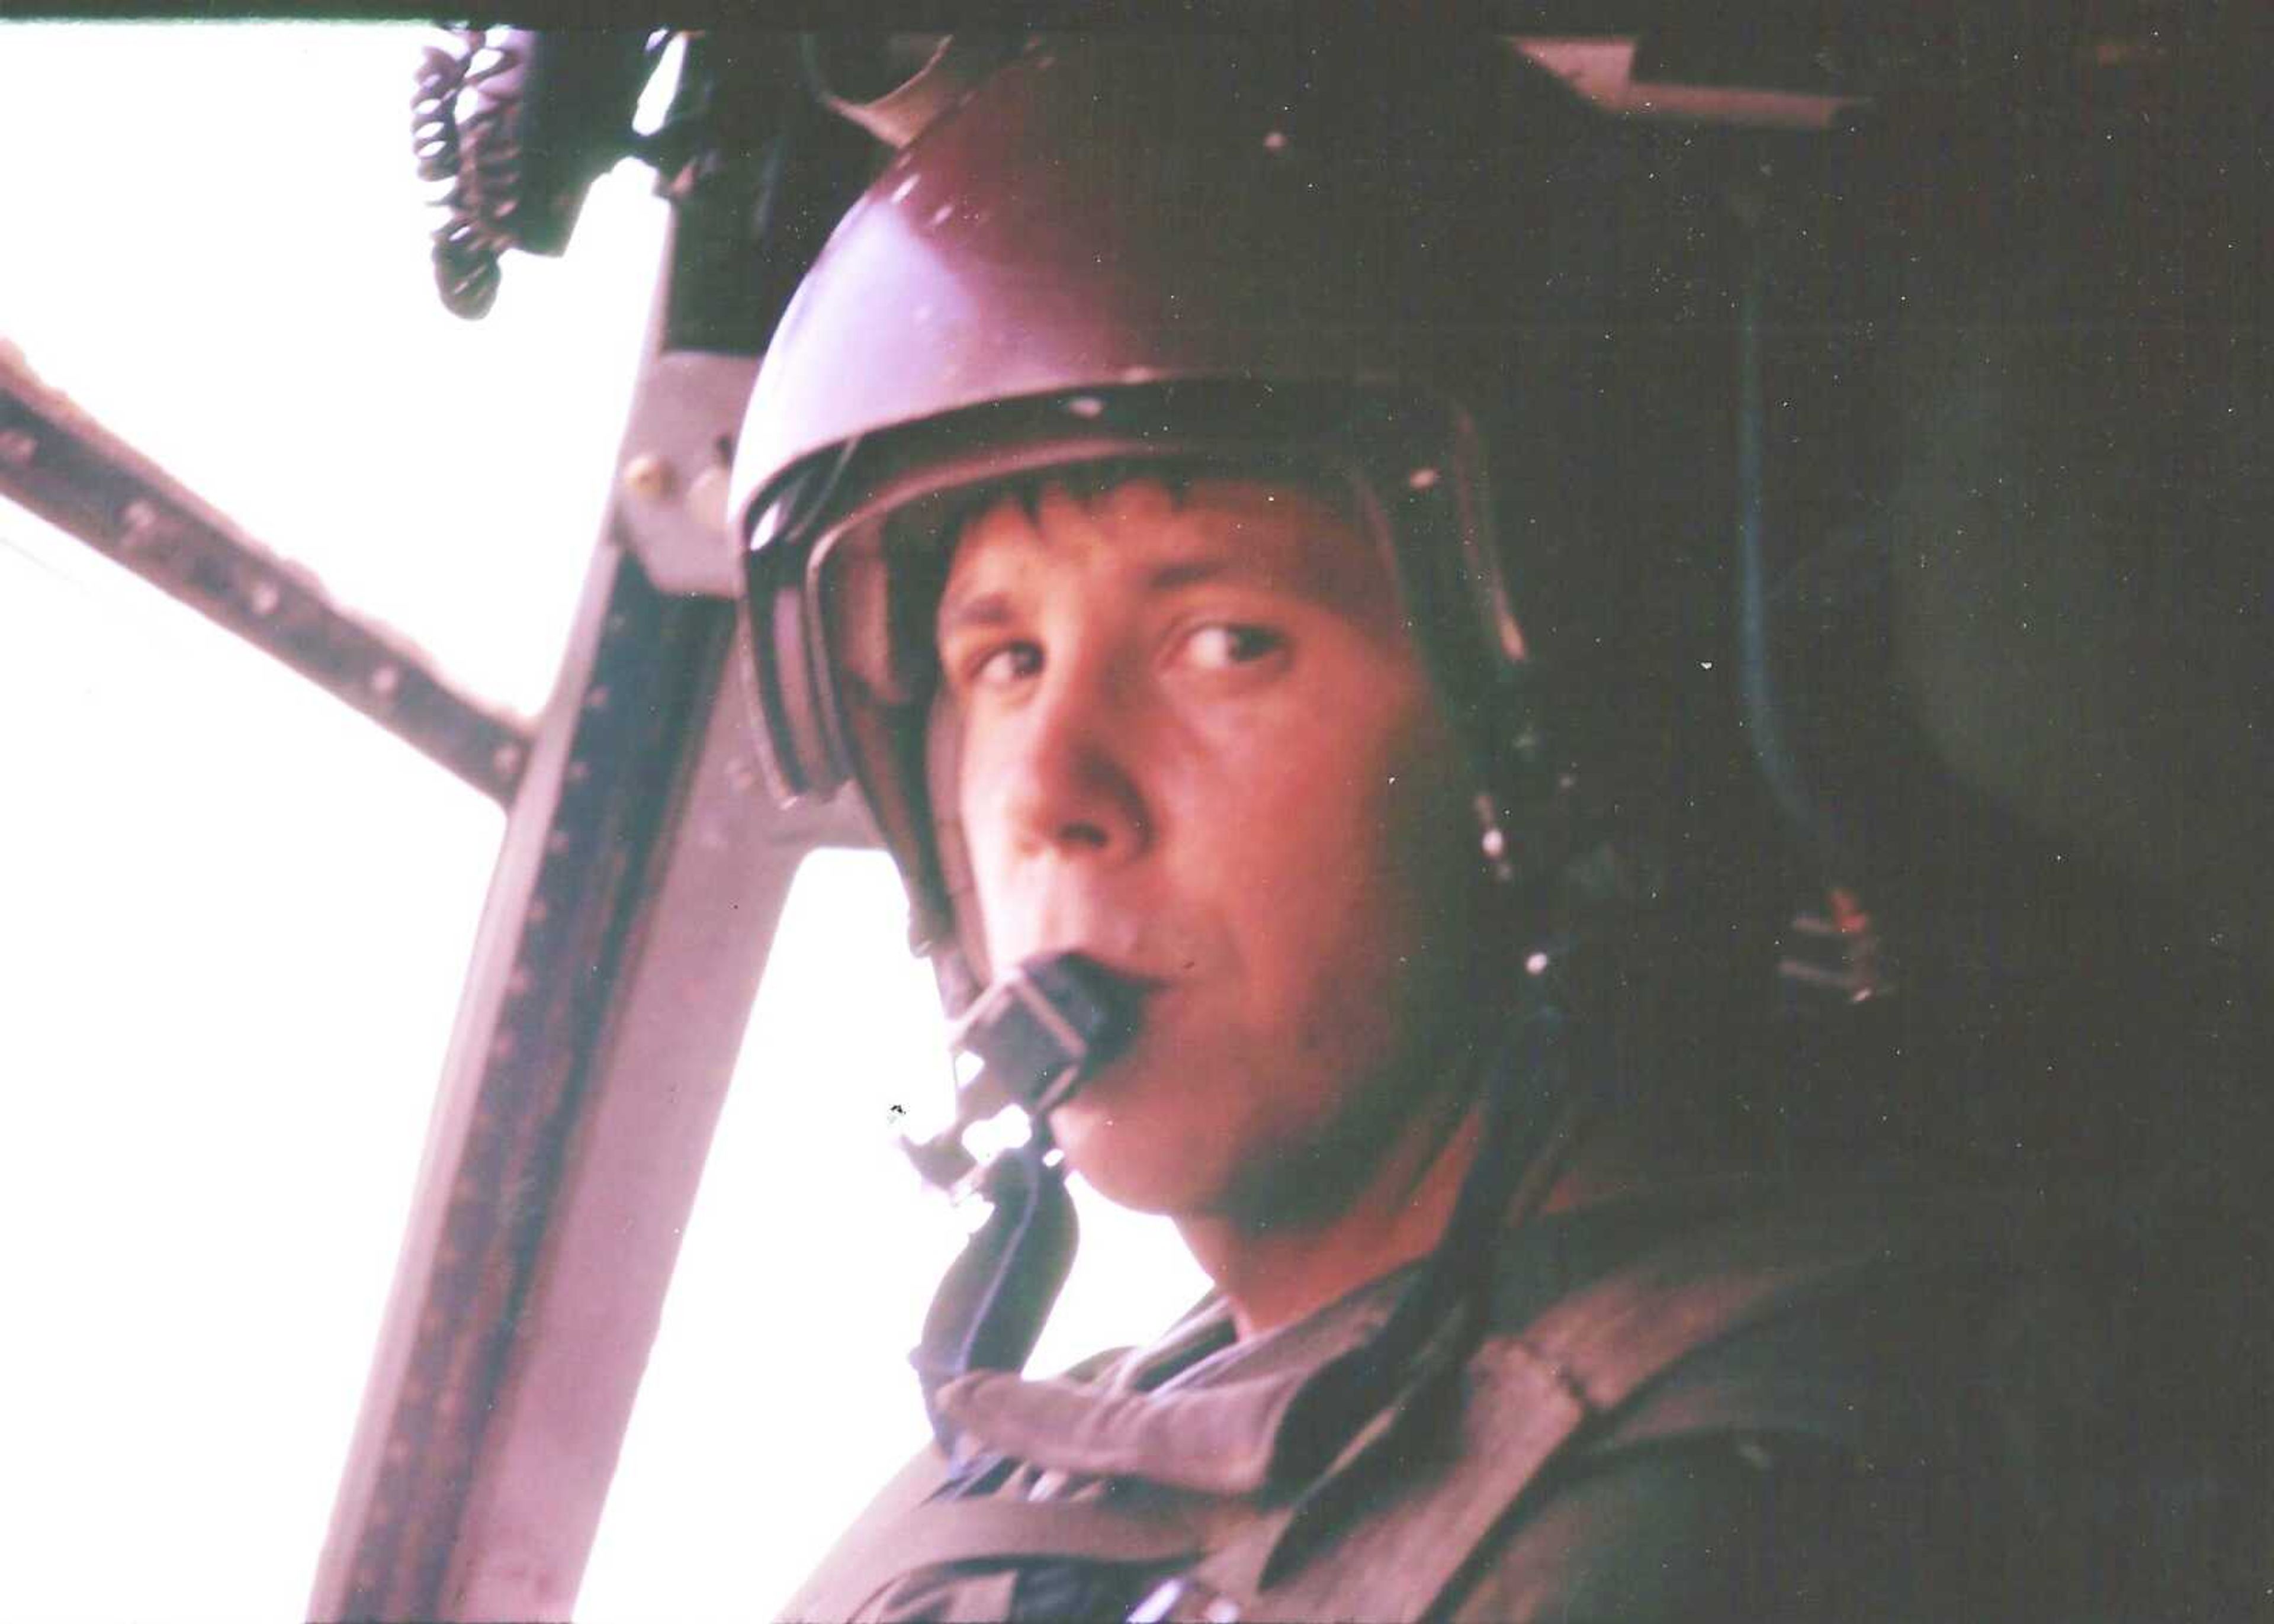 First Lietunant harold G. Walker as Aircraft Commander of a CH-46 in Vietnam.